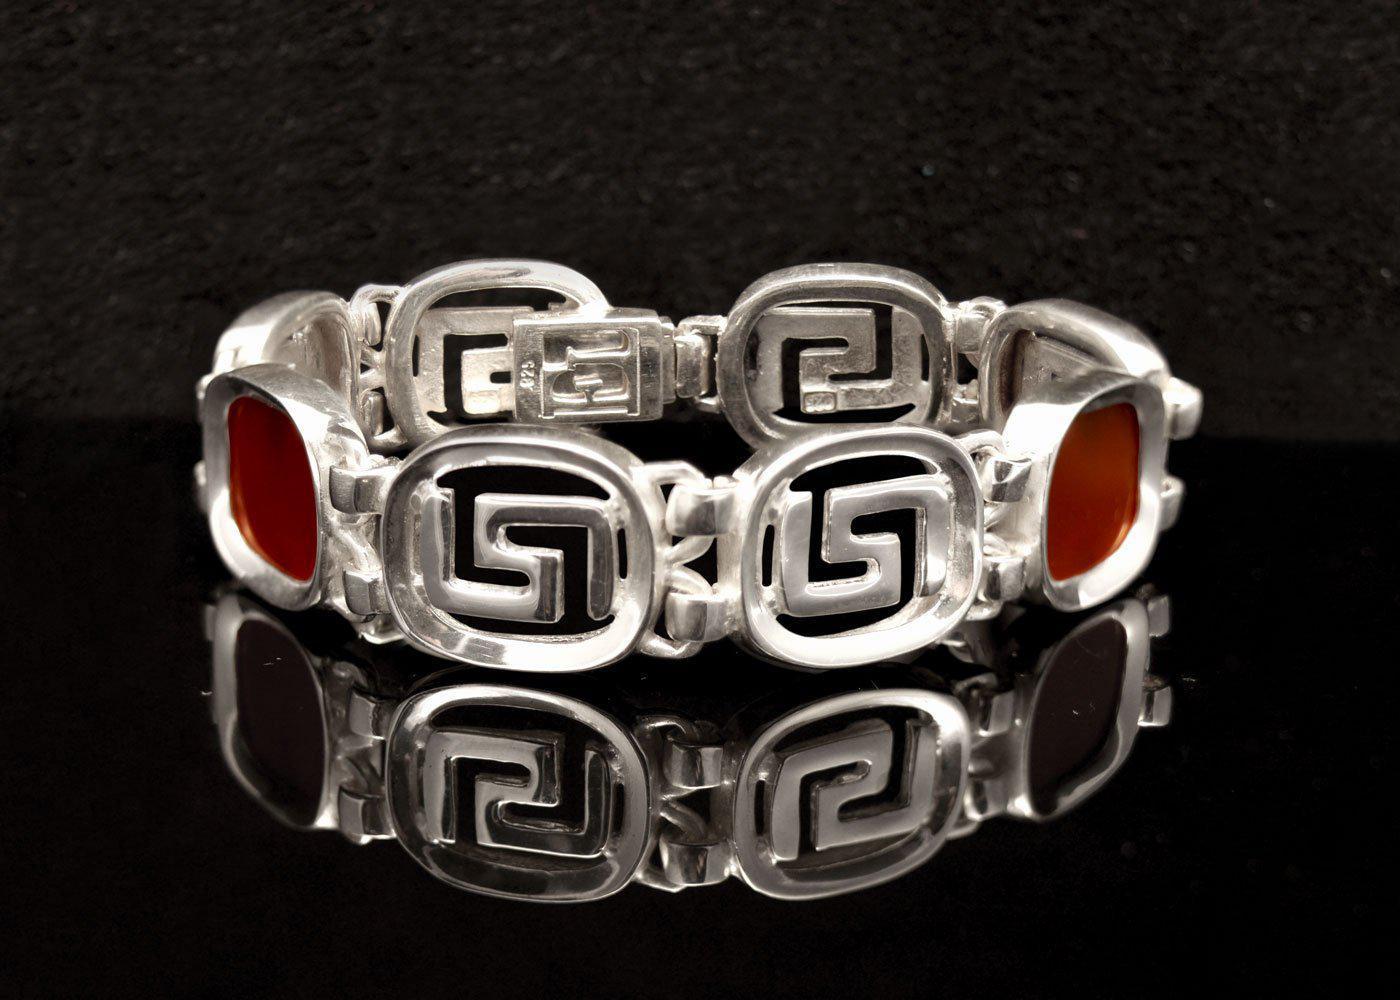 Greek Key Meander Bracelet in Sterling Silver (B-67)